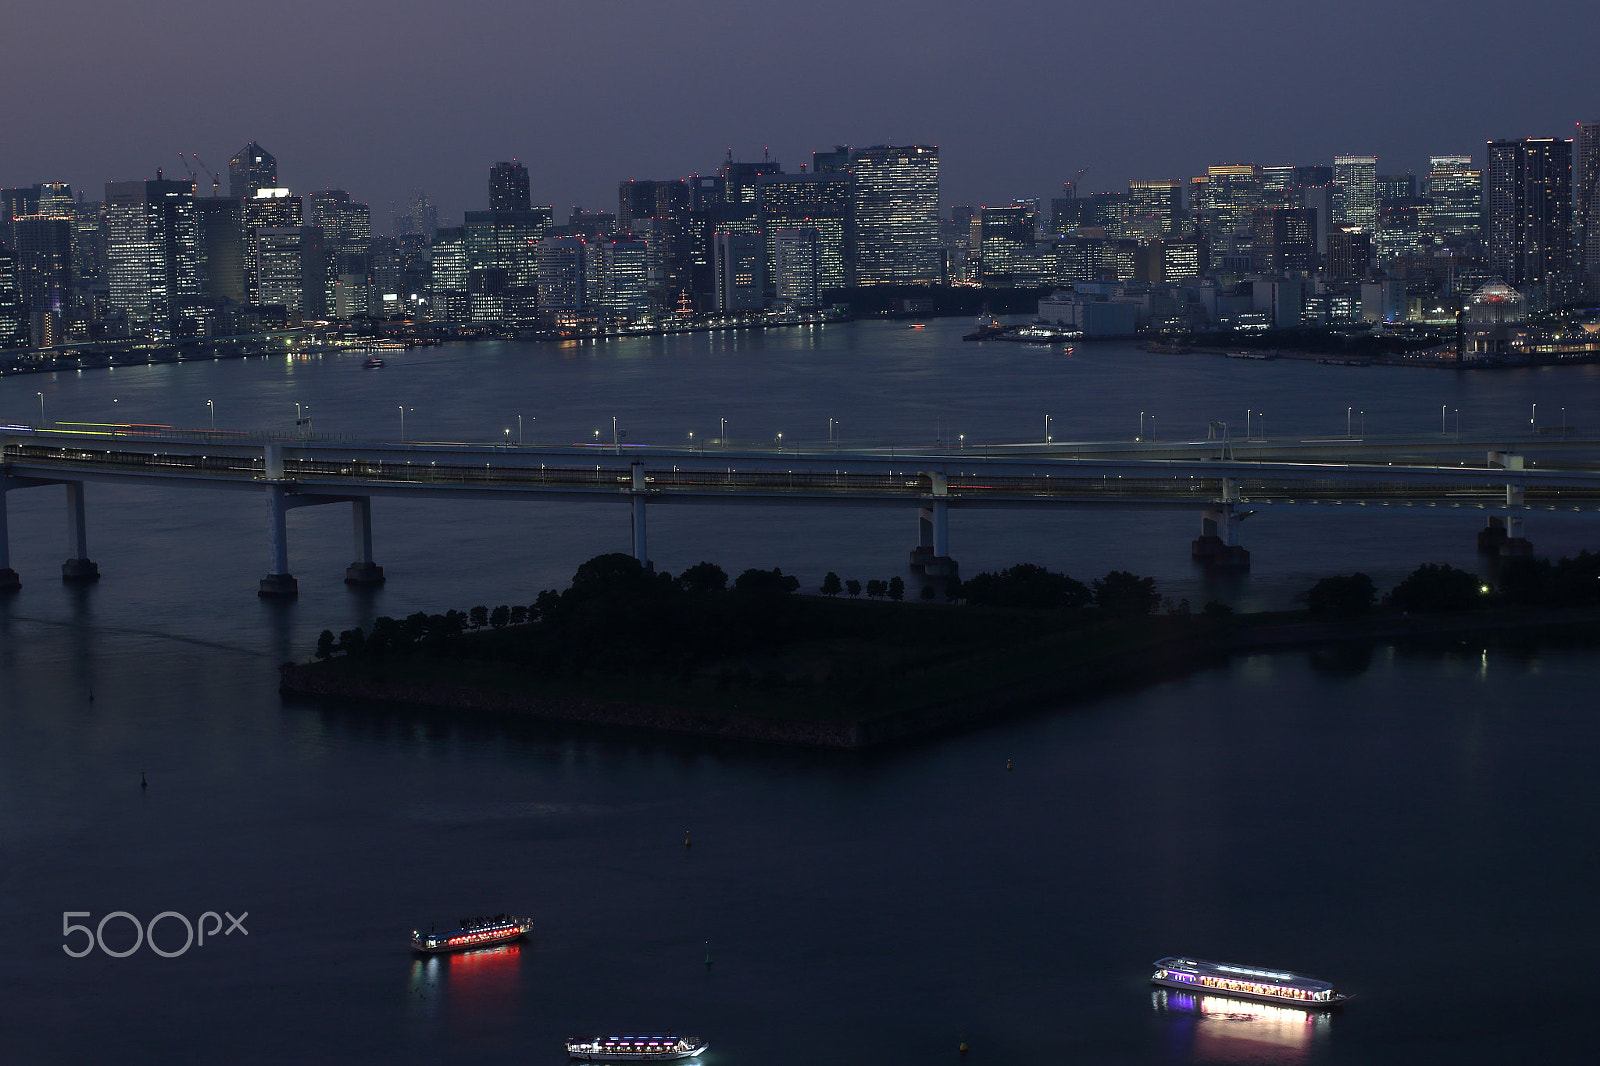 Canon EOS 600D (Rebel EOS T3i / EOS Kiss X5) sample photo. Odaiba (artificial island in tokyo bay) photography